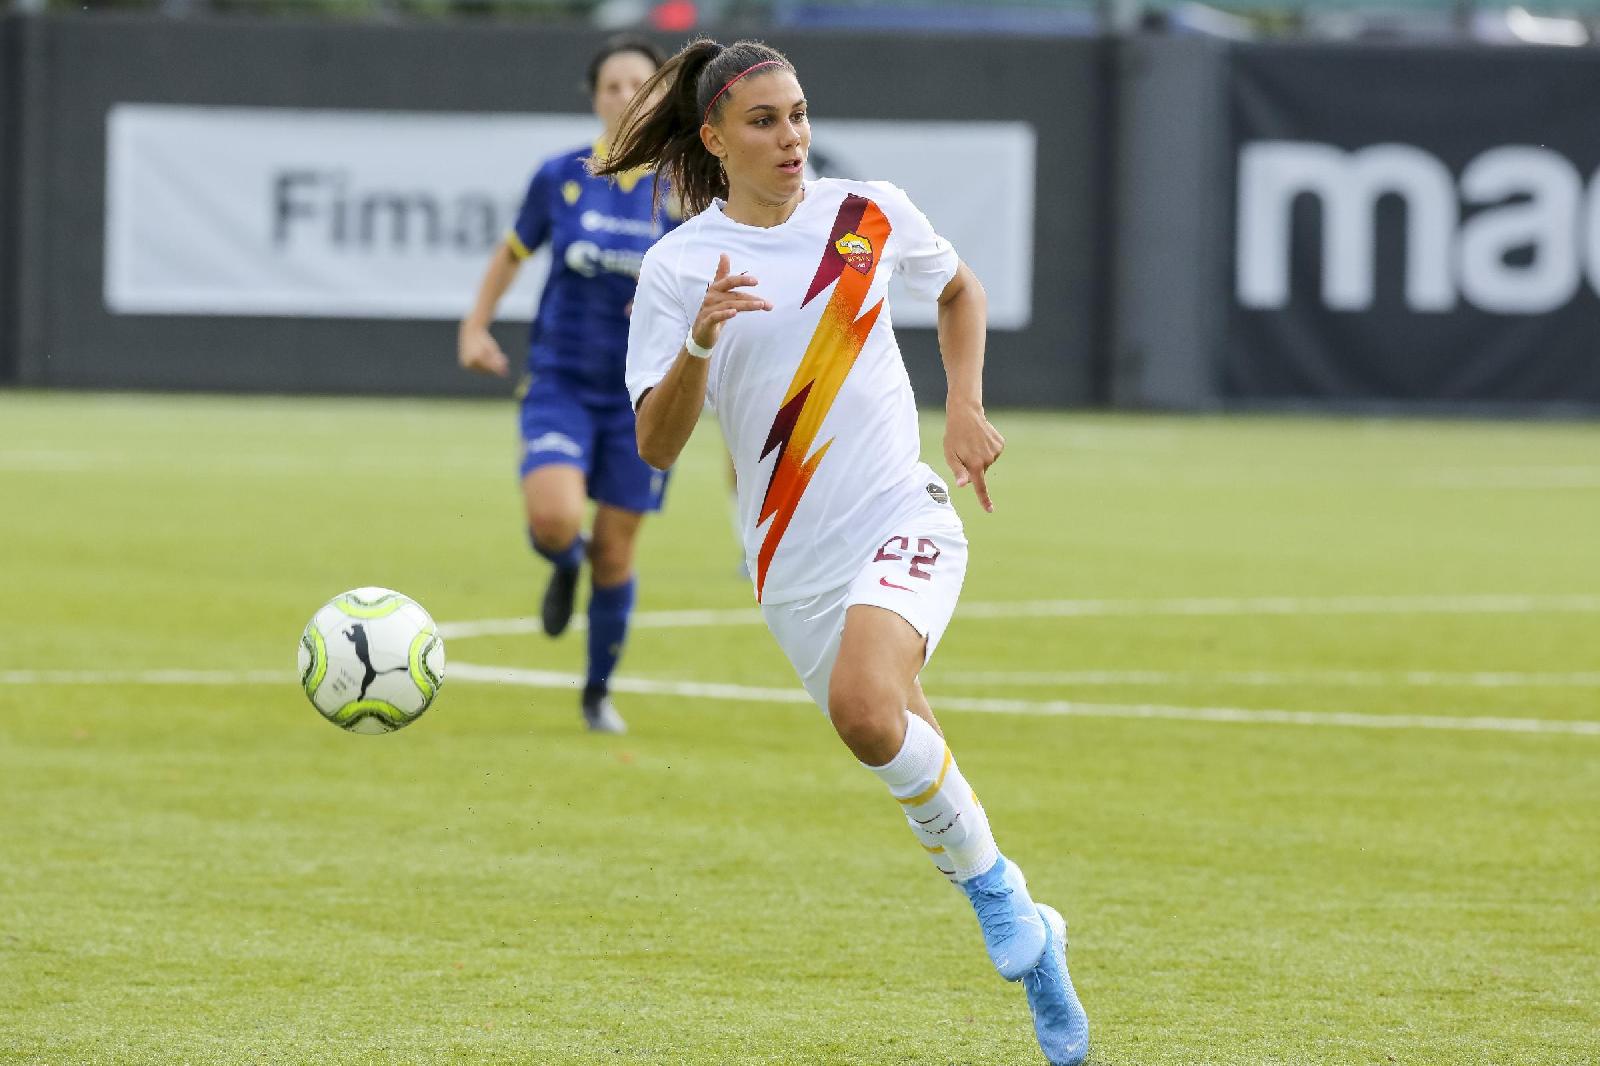 La Roma Femminile schianta l'Inter 4-1: ora è terza in campionato©LaPresse